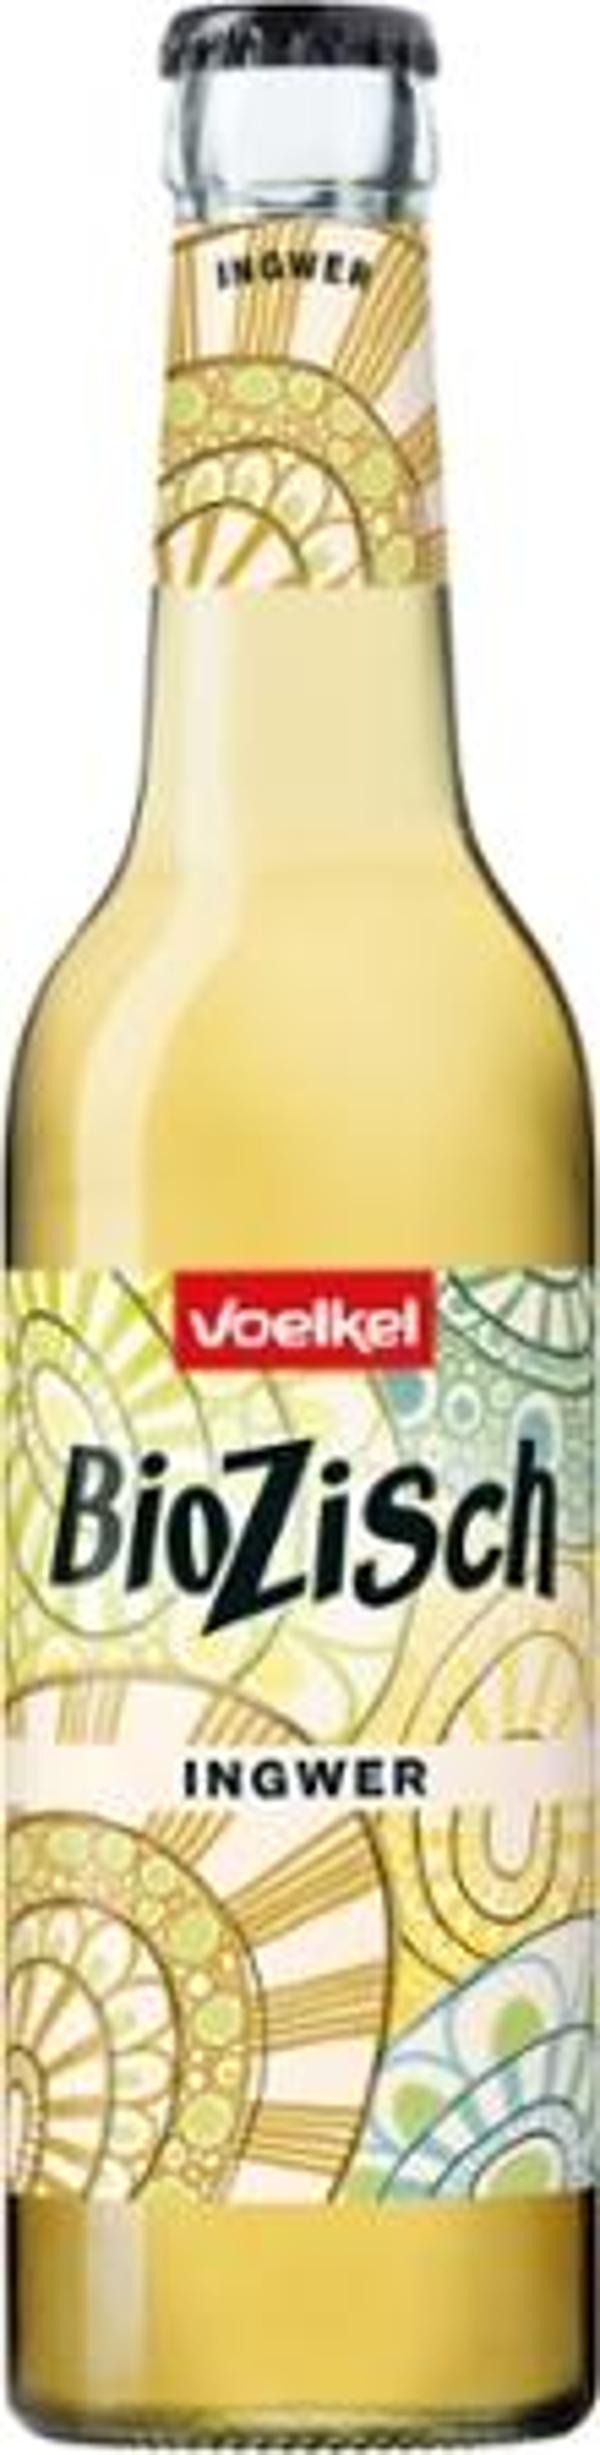 Produktfoto zu Bio Zisch Ingwer 0,33 l